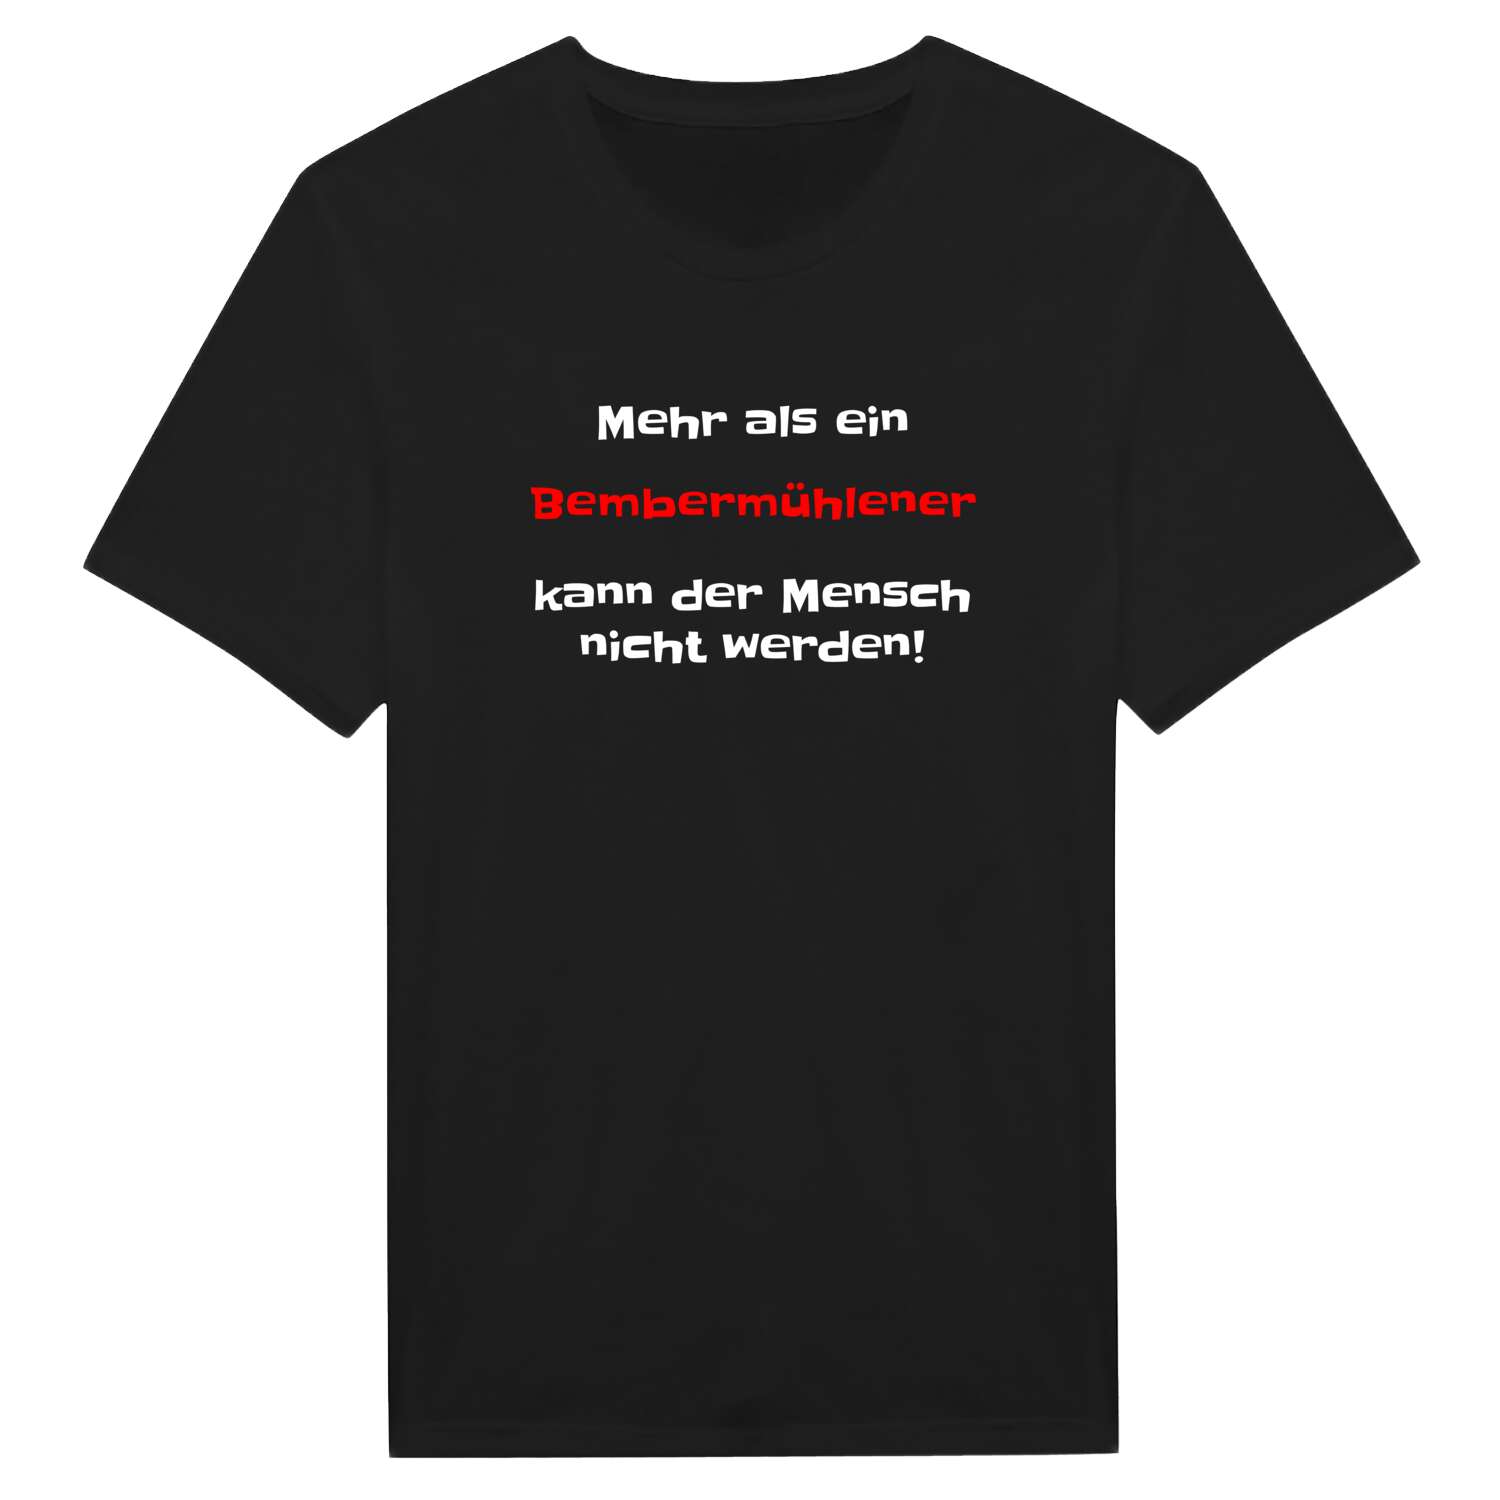 Bembermühle T-Shirt »Mehr als ein«